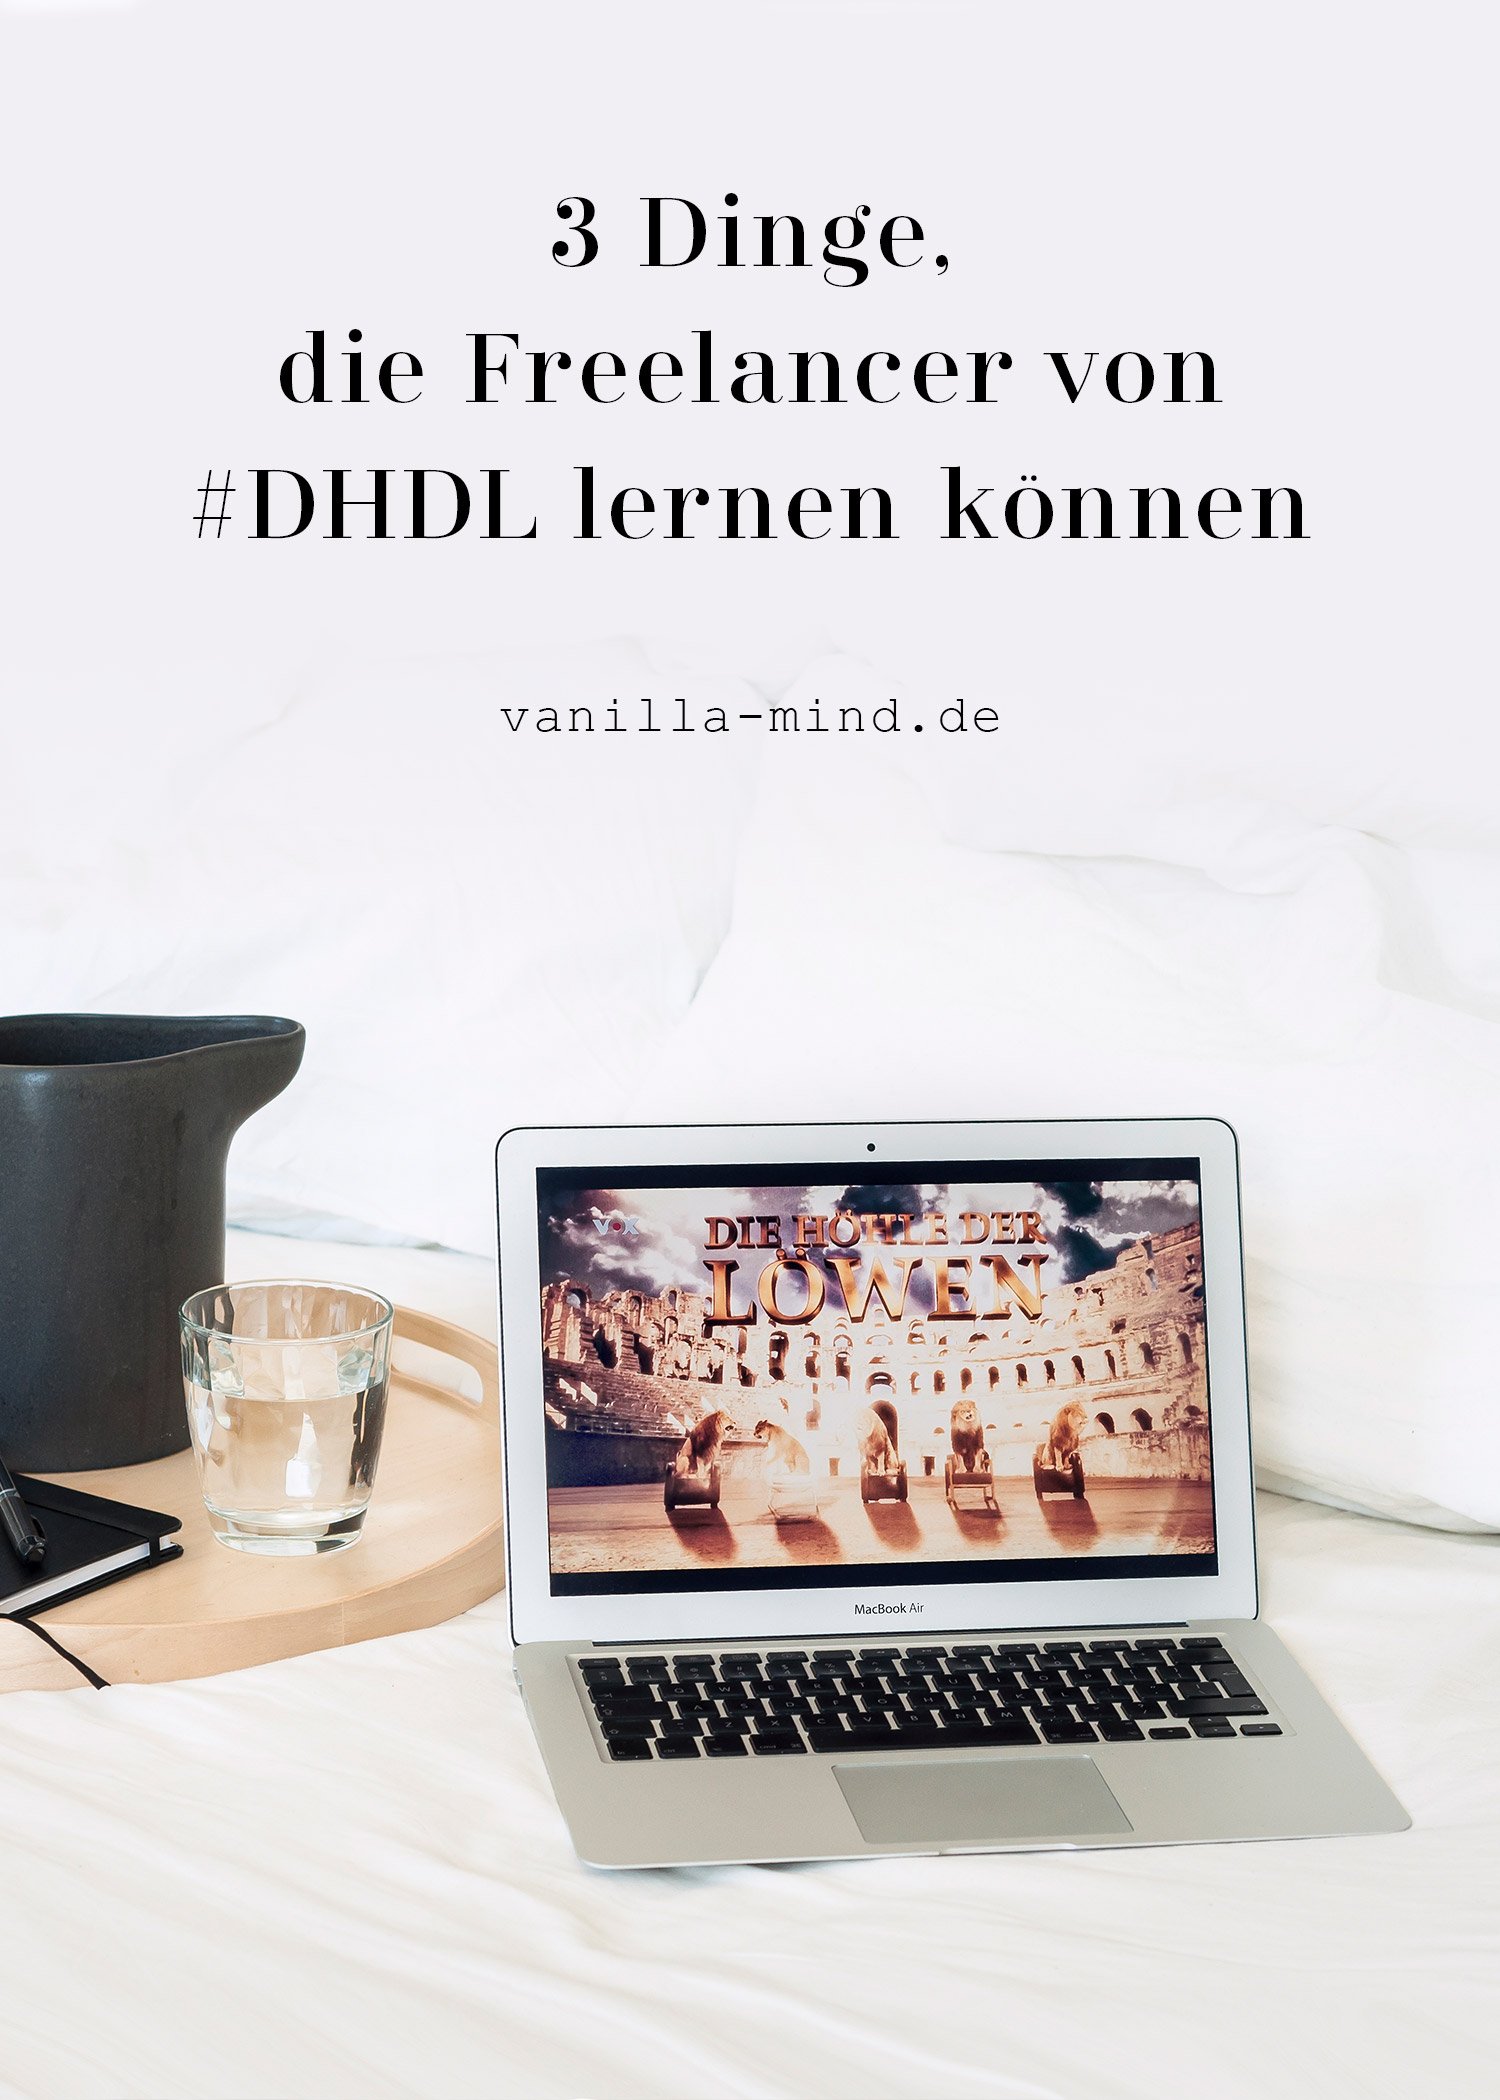 Für mich ist #DHDL mehr als Unterhaltung mit markigen Sprüchen. Ich habe einige Punkte entdeckt, von denen jeder lernen kann! #business #arbeit #job #freelancer